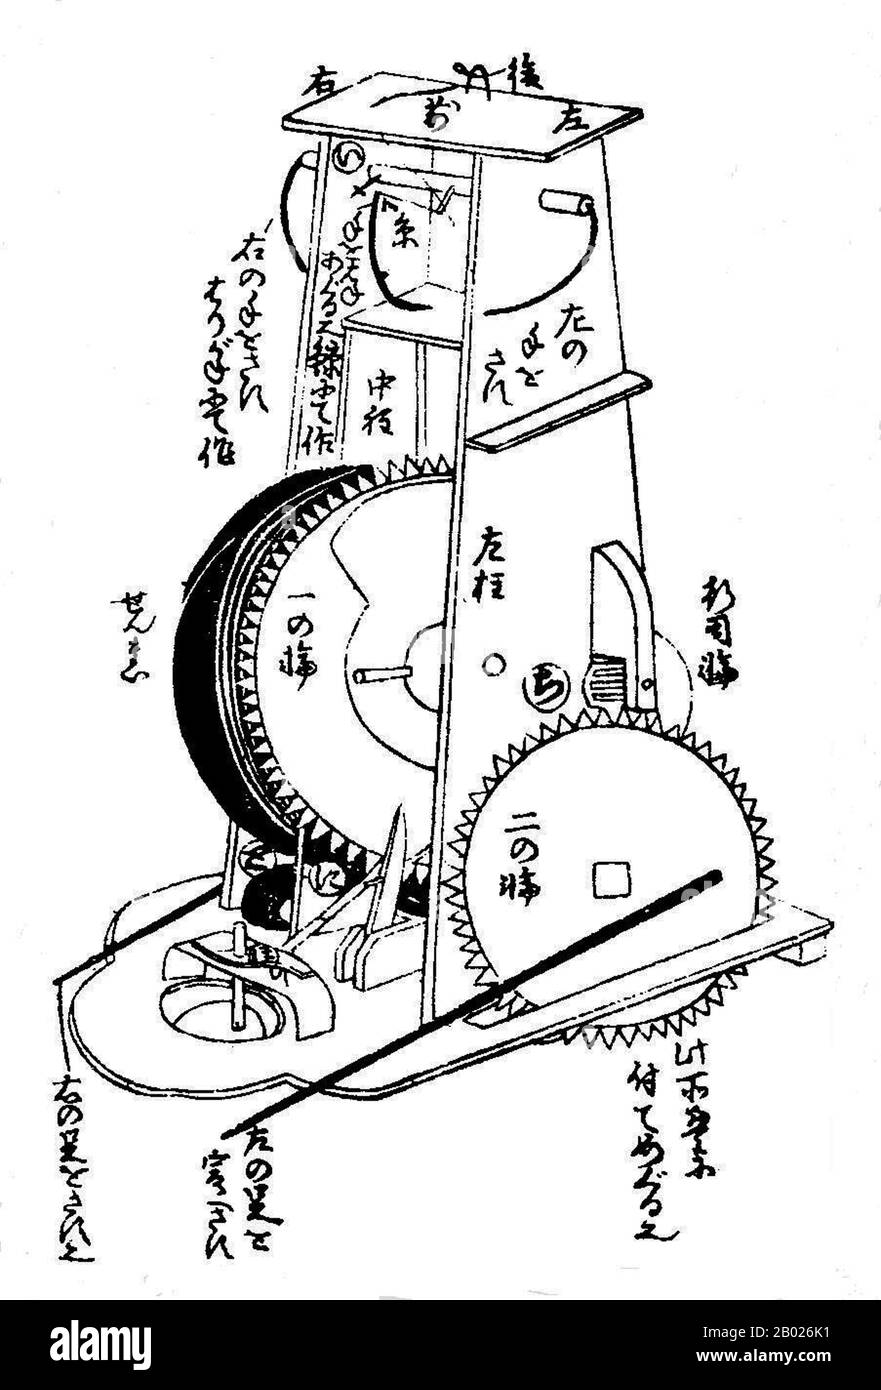 Karakuri-zui a été écrit par Hosokawa Hanzo Yorinao, et a été publié dans la période Edo (1798). Ce manuscrit de génie mécanique le plus ancien du Japon se compose de trois volumes. Ils ont ensuite été réimprimés à Osaka et Kyoto. Le compendium détaille la structure et le processus de construction des horloges (wadokei, jp. 和時計) et automatisé (Karakuri ningyō, jp. からくり人形) poupées mécaniques, et il explique non seulement les techniques, mais aussi l'esprit de fabrication de ces dispositifs mécaniques. Banque D'Images